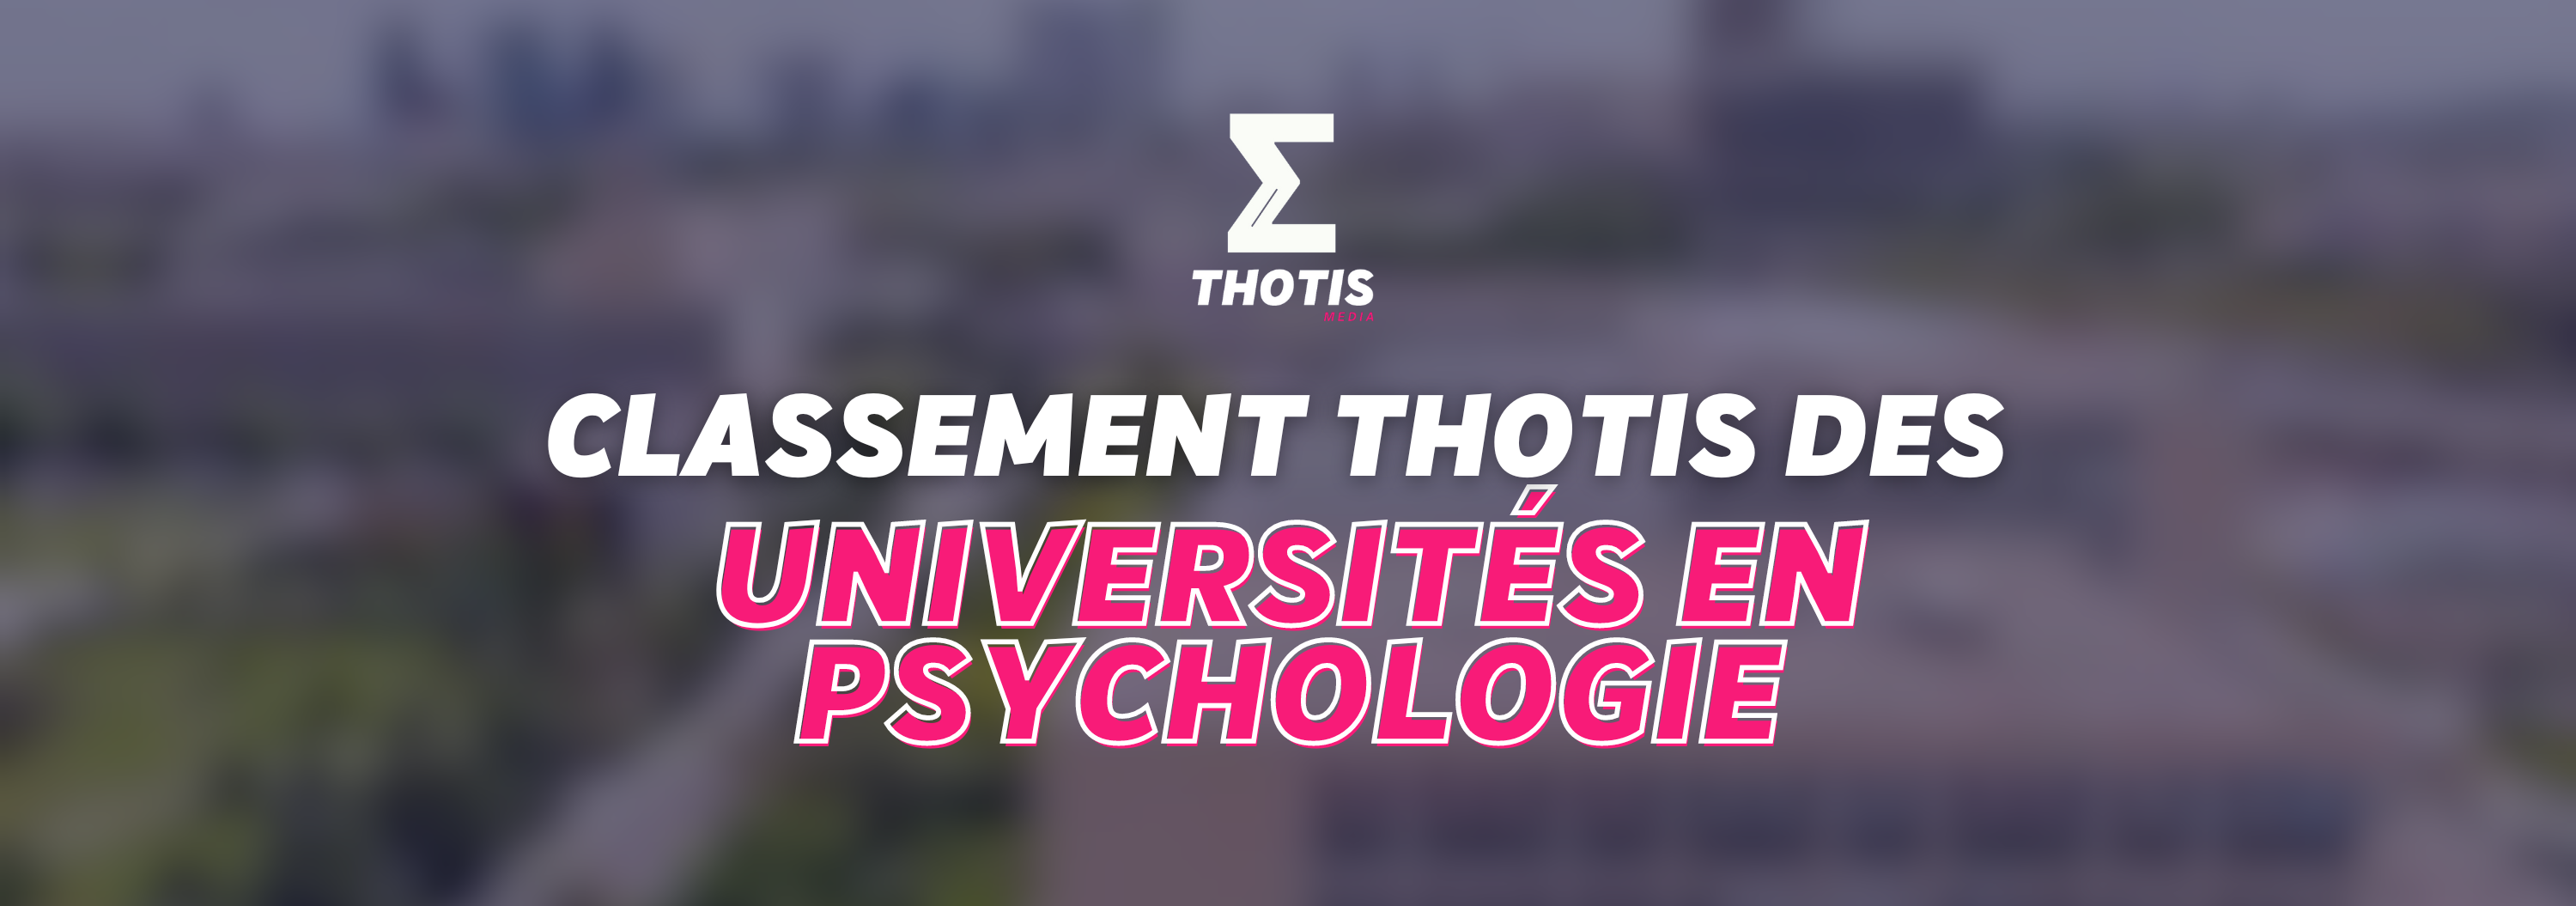 Classement Thotis des Universités en Psychologie